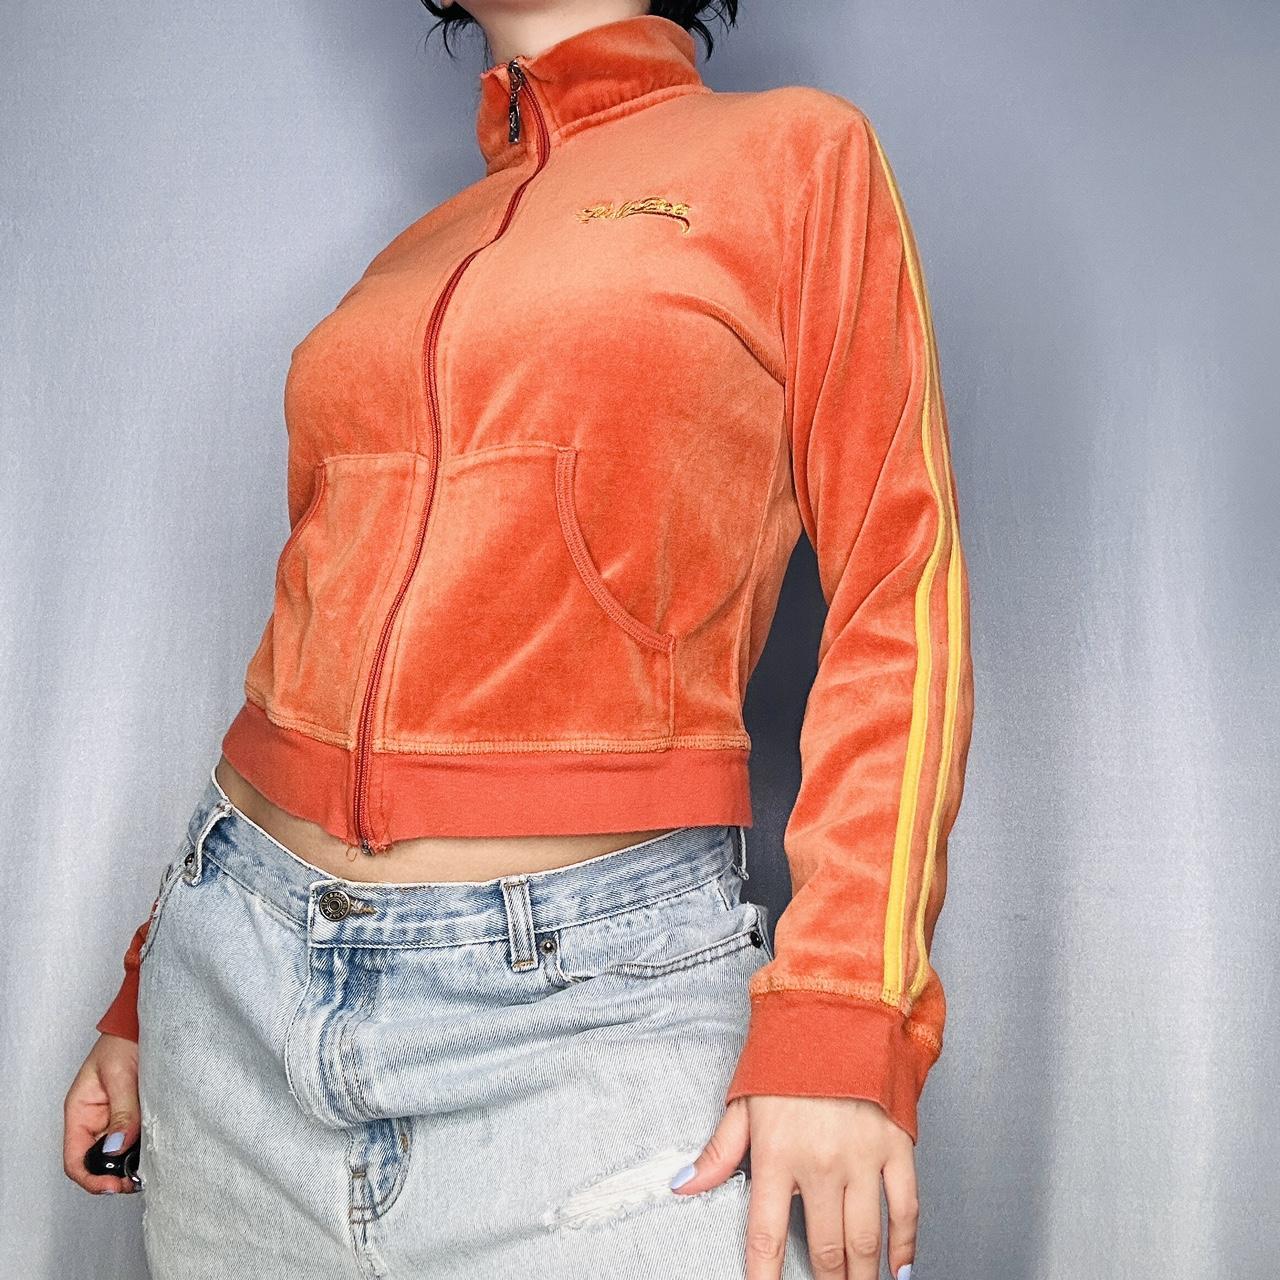 Hale Bob Women's Orange Jacket